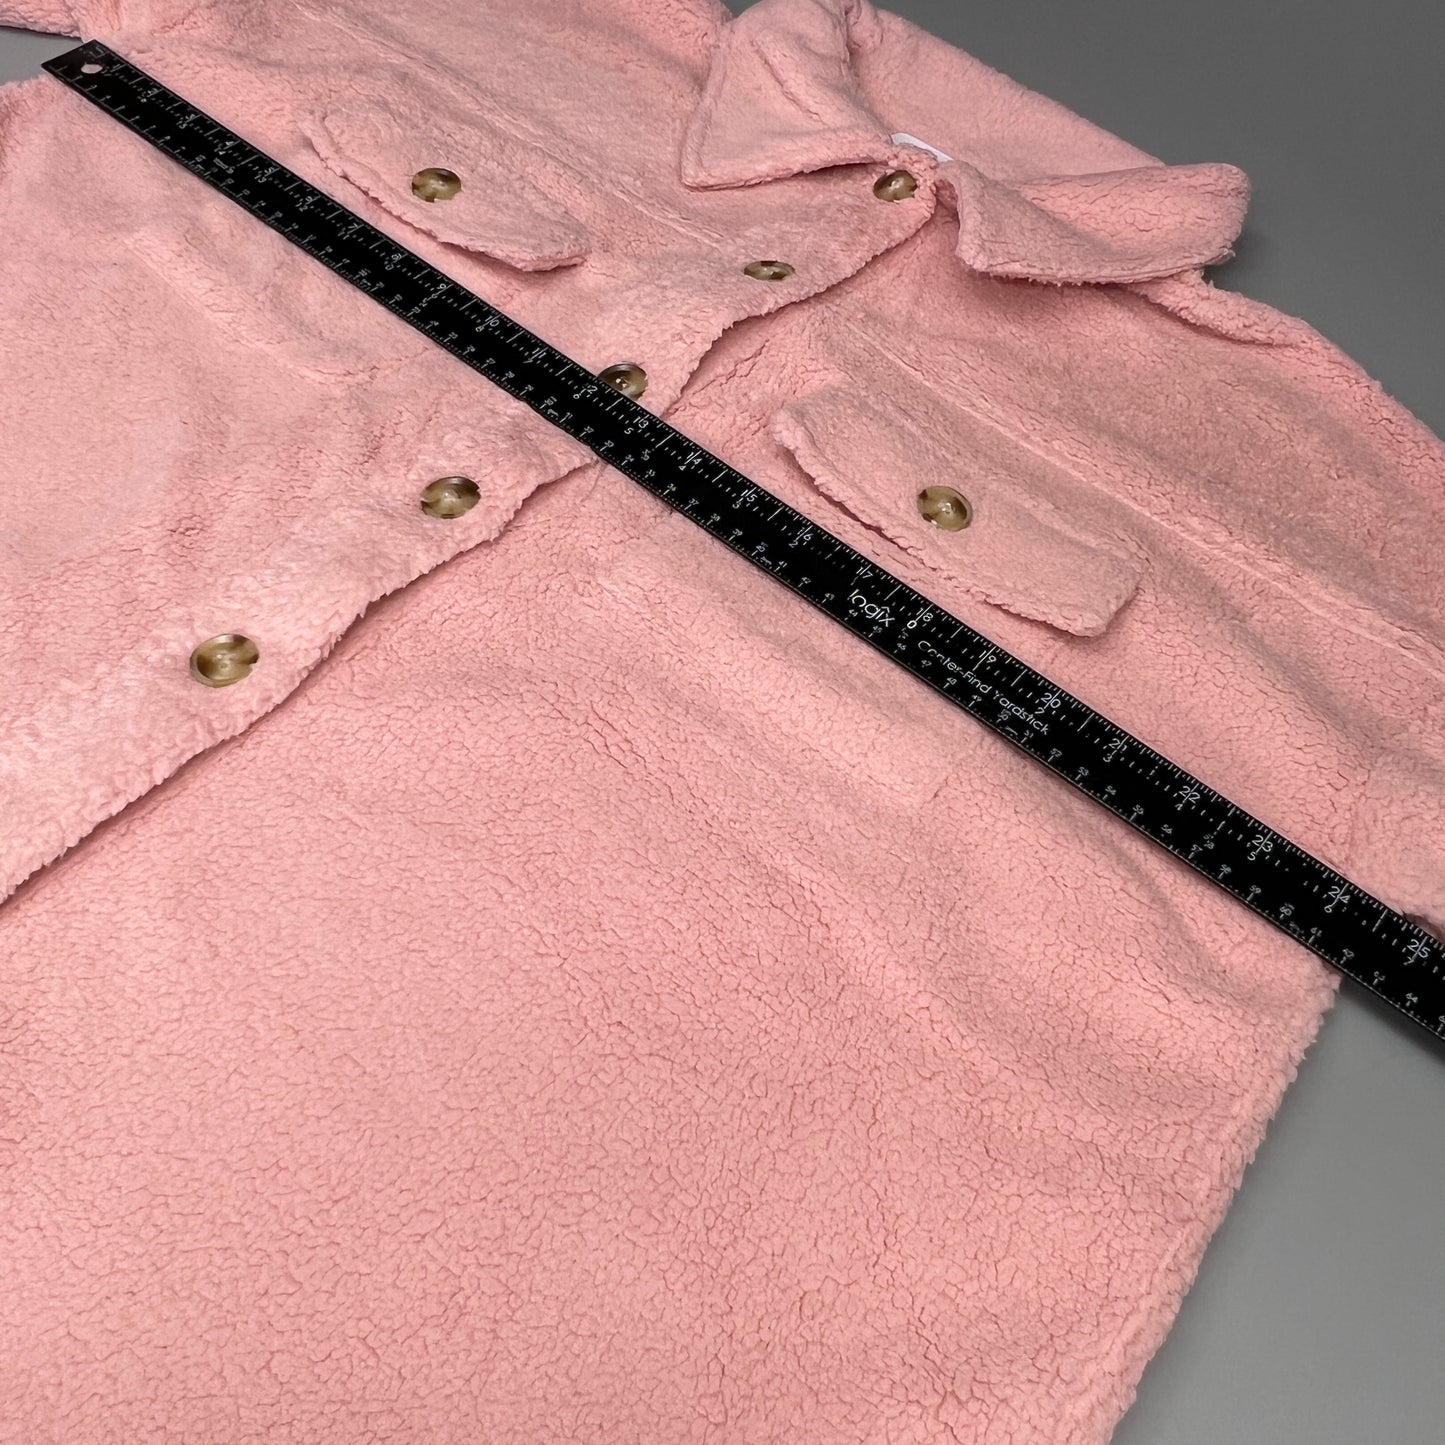 PINK LILY Fleece Button-up Jacket Women's Sz L Mauve Pink PL177 (New)